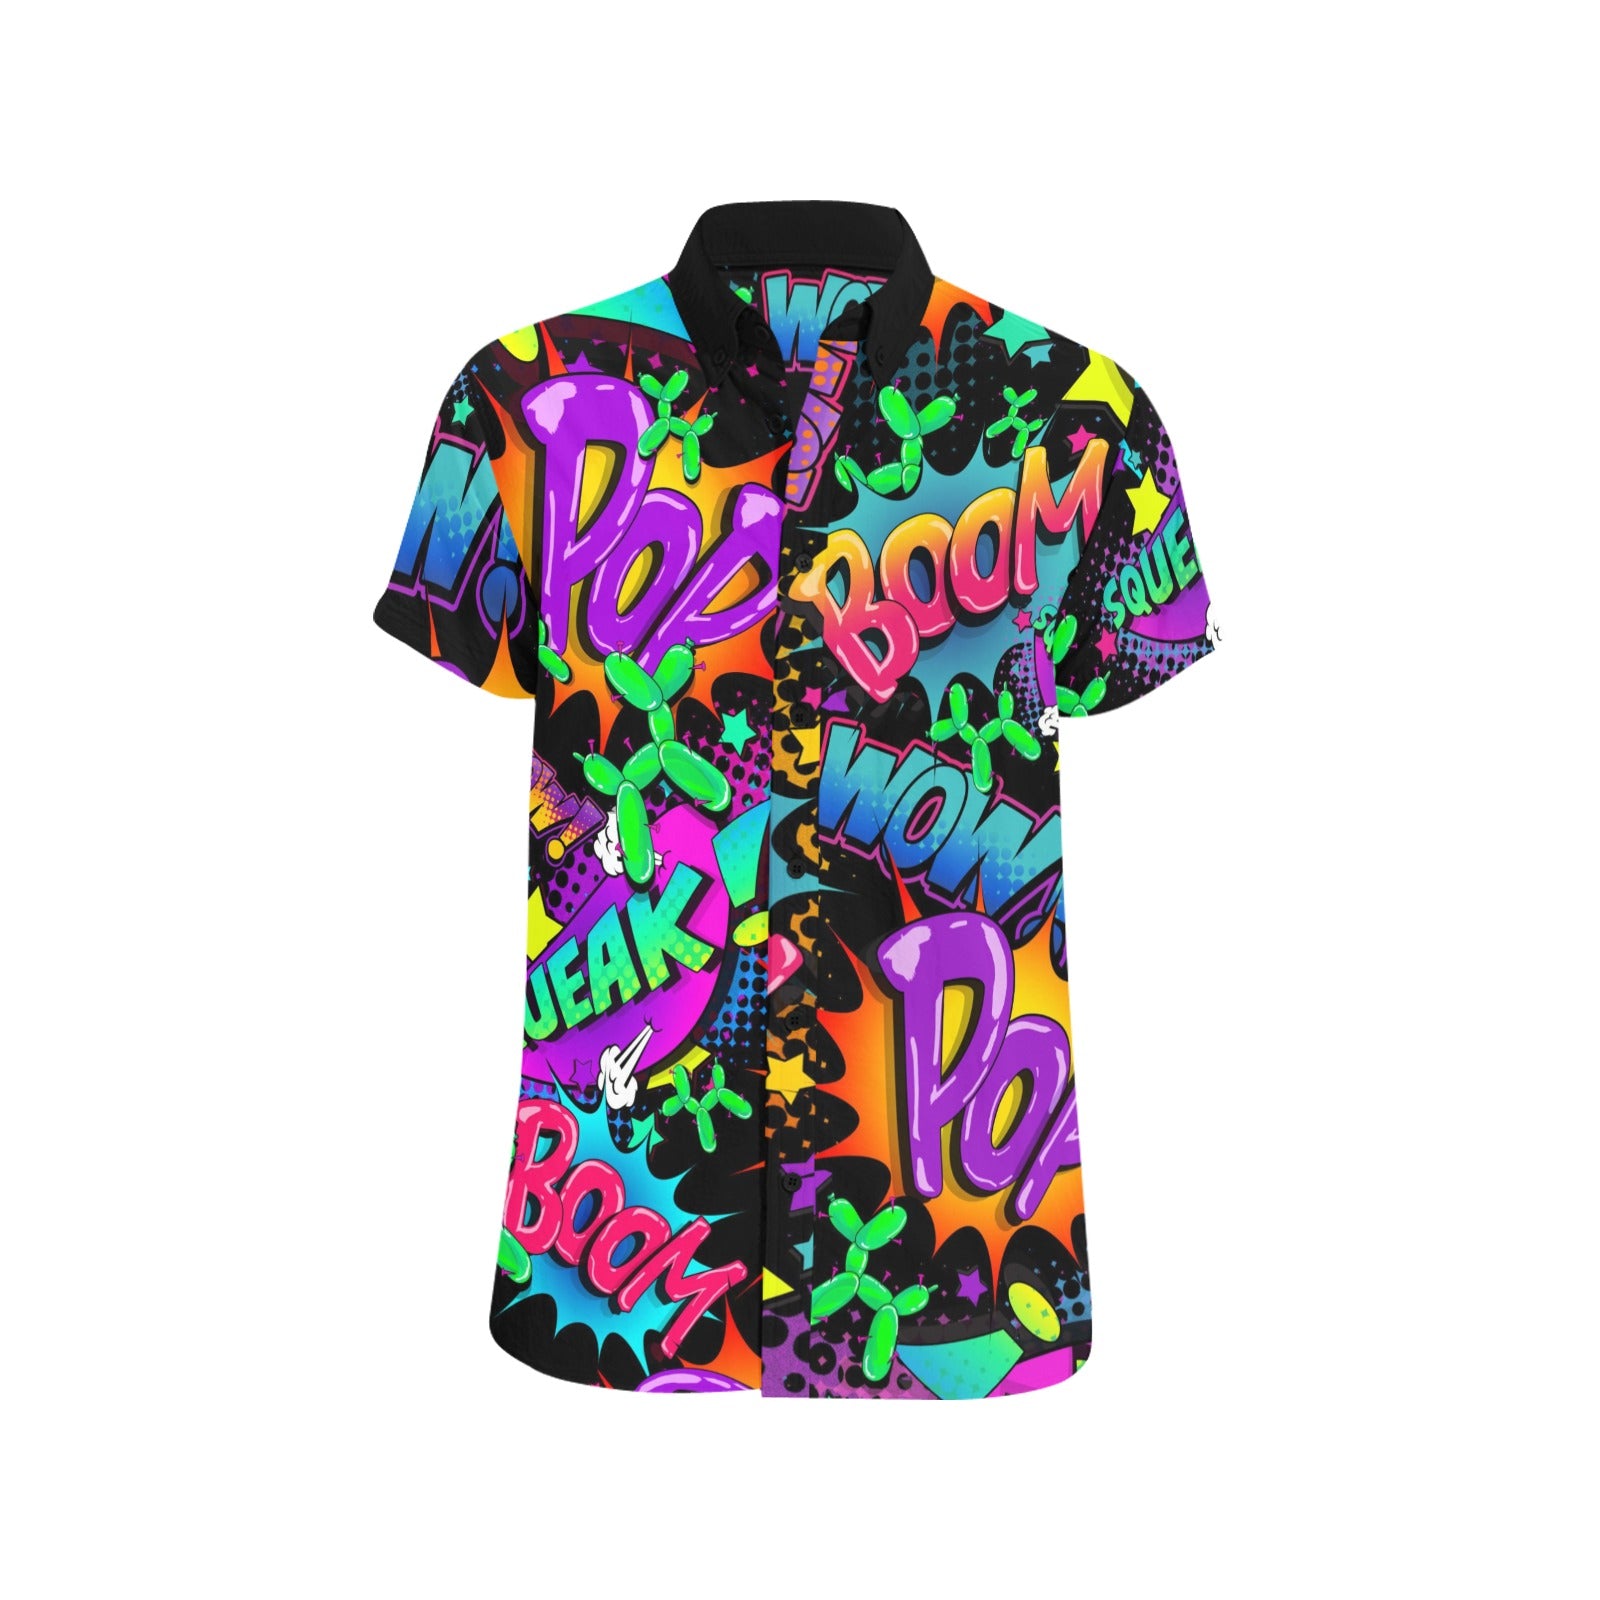 Balloon twister shirt colourful pop art text